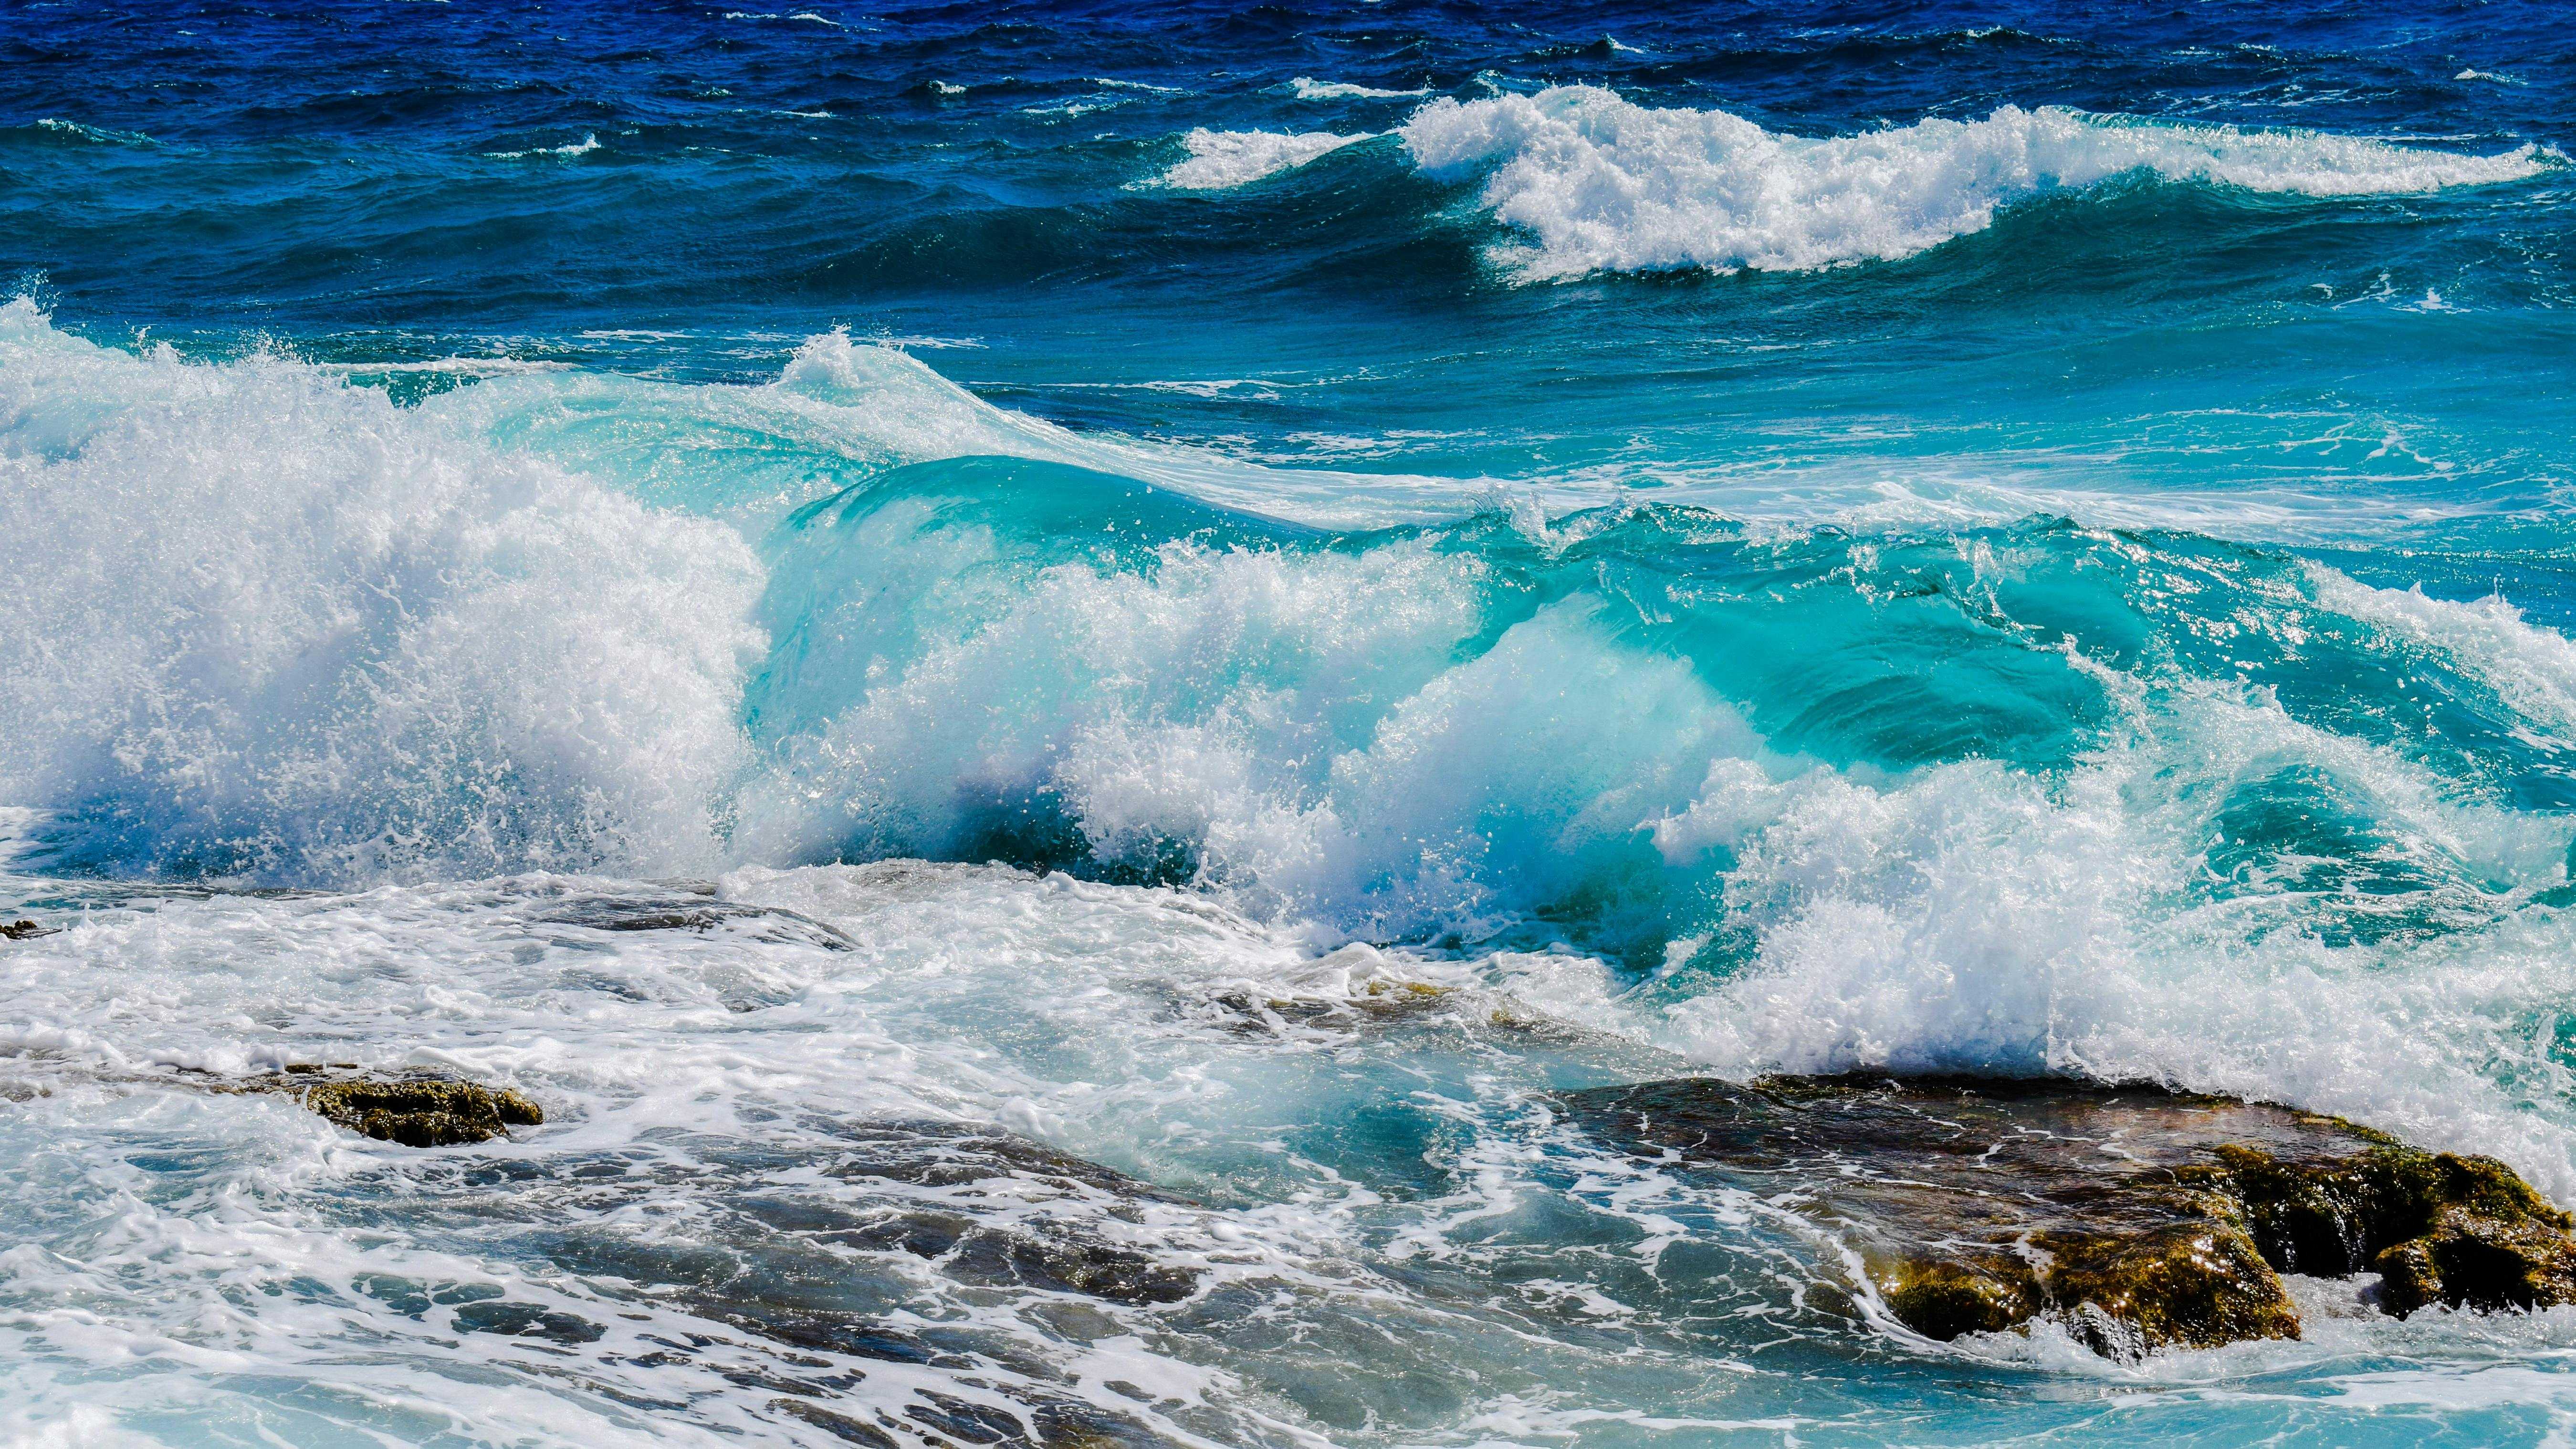 Cảnh biển với những dòng nước xanh mát, những đợt sóng trào, những bờ cát trắng lớn nhỏ là một kiệt tác của thiên nhiên. Hãy xem những hình ảnh đẹp và tái hiện lại cảnh biển đầy sống động trong tâm trí bạn.